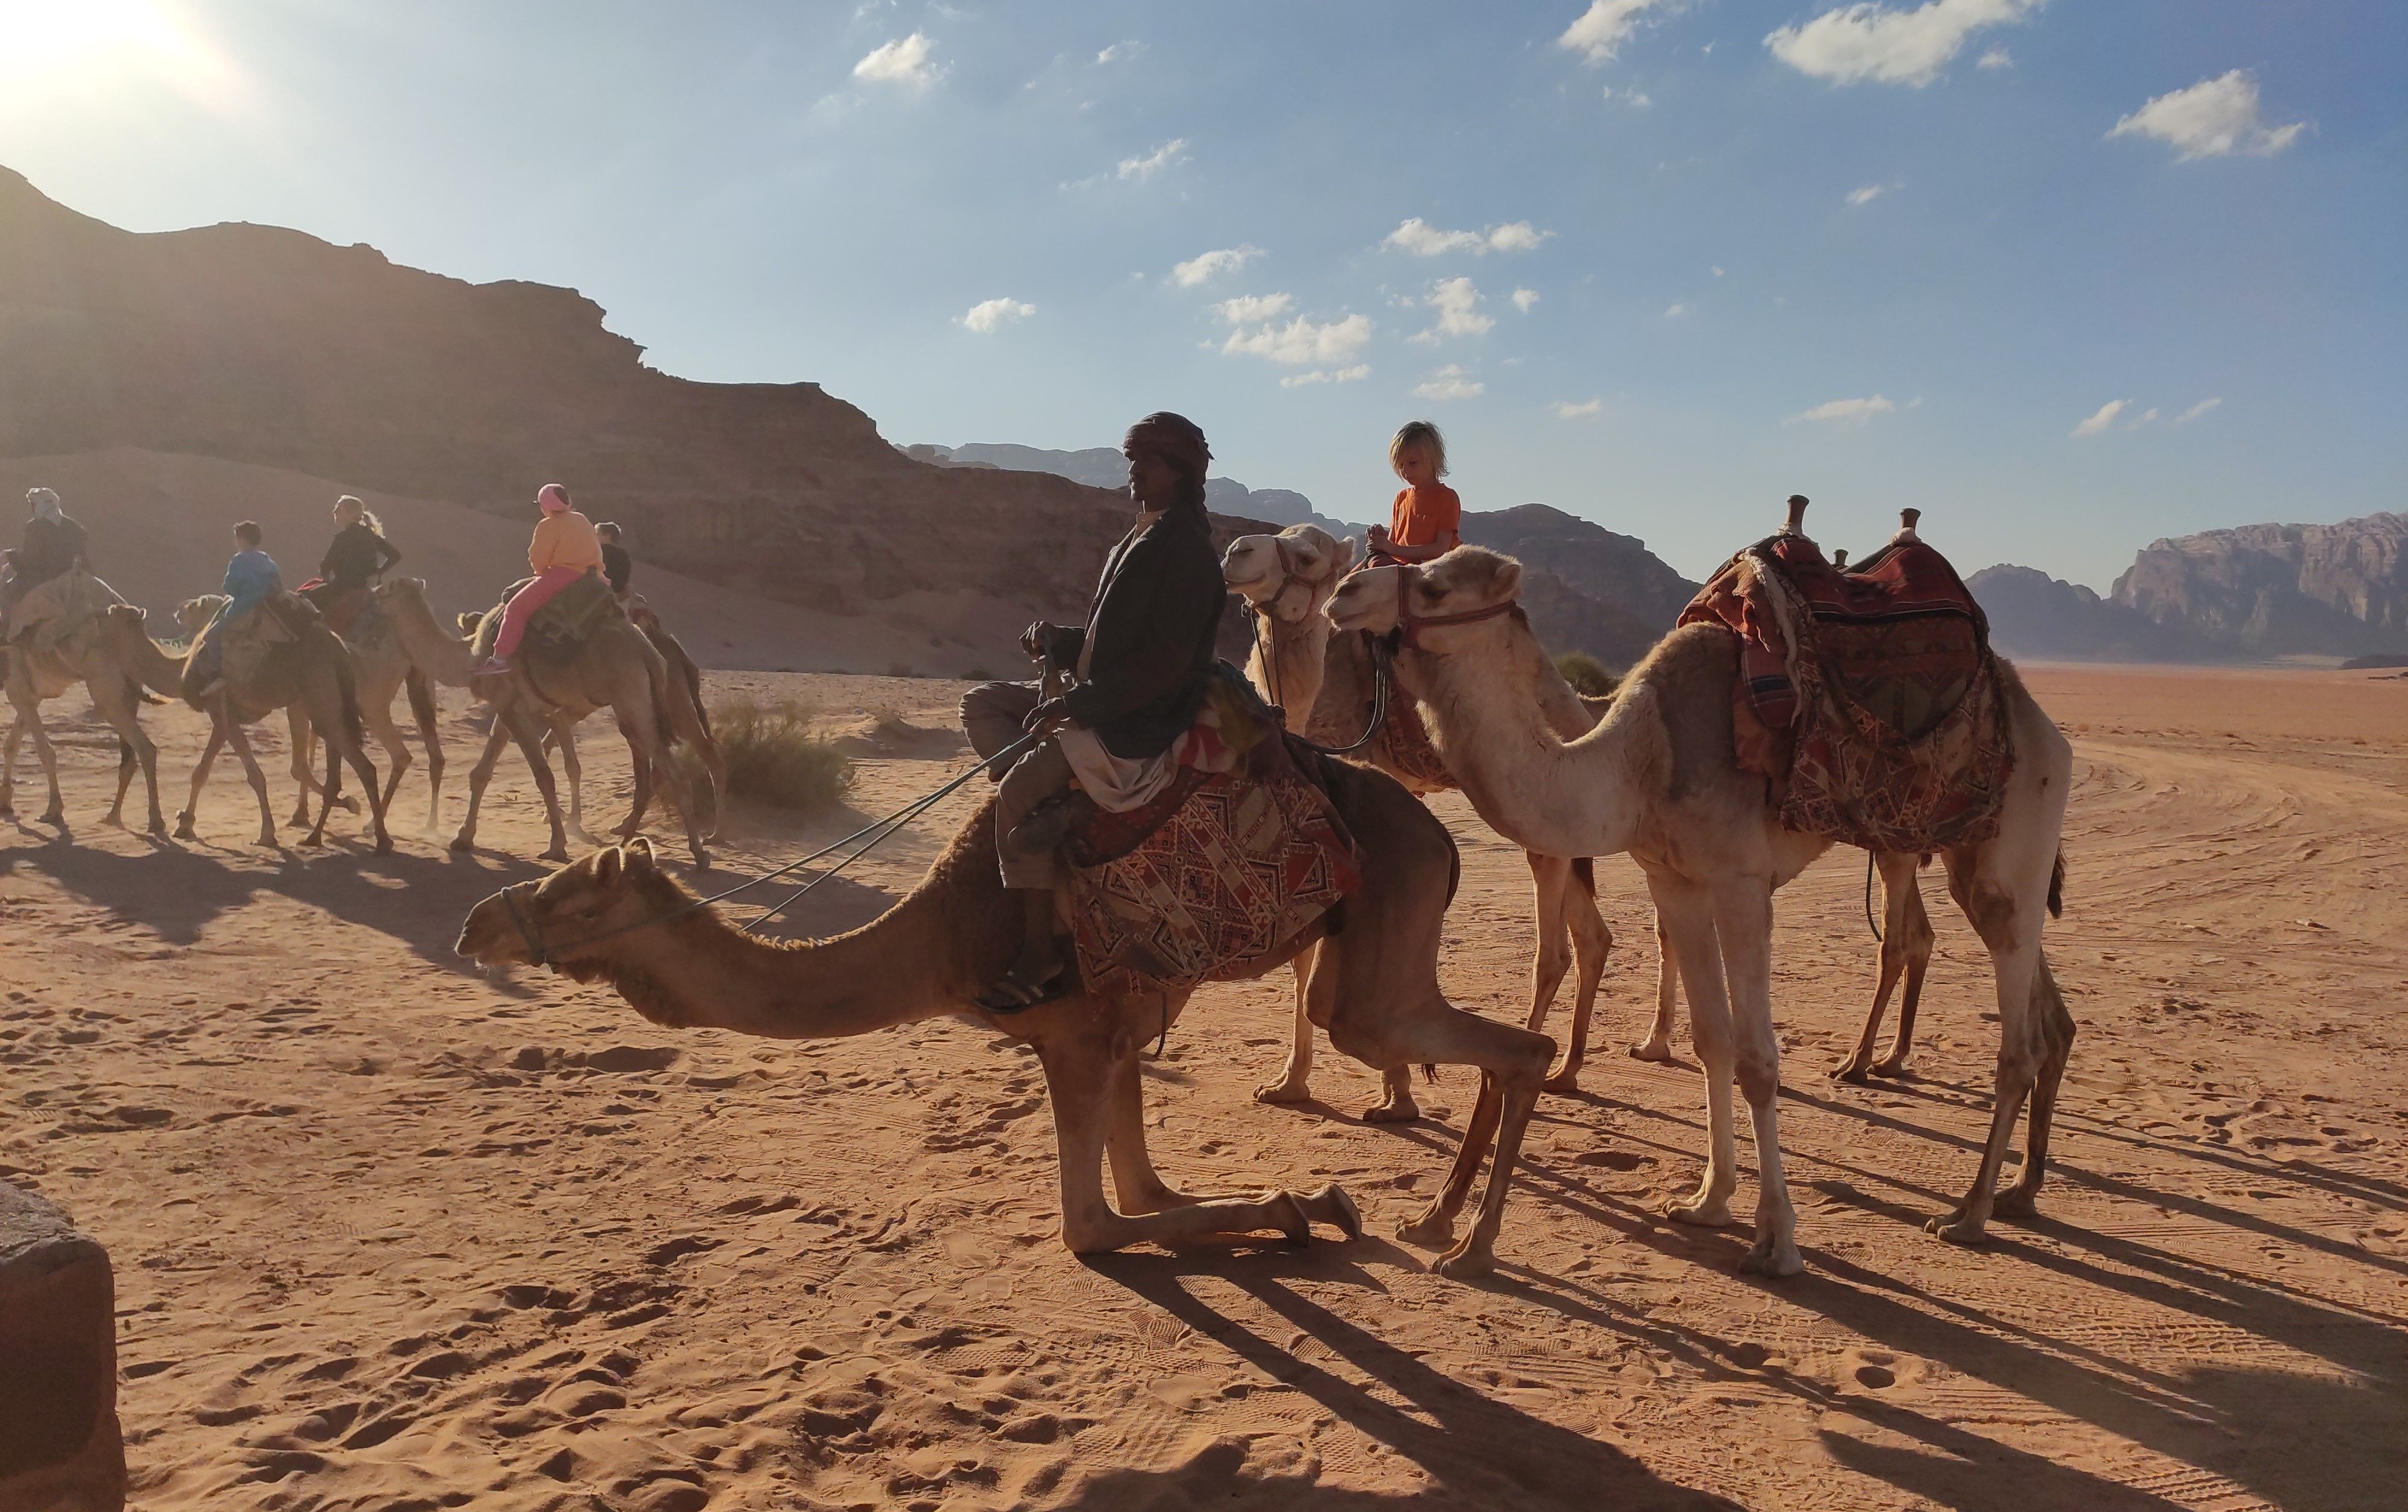 Reisebericht Jordanien mit Kindern - Kamelreiten im Wadi Rum